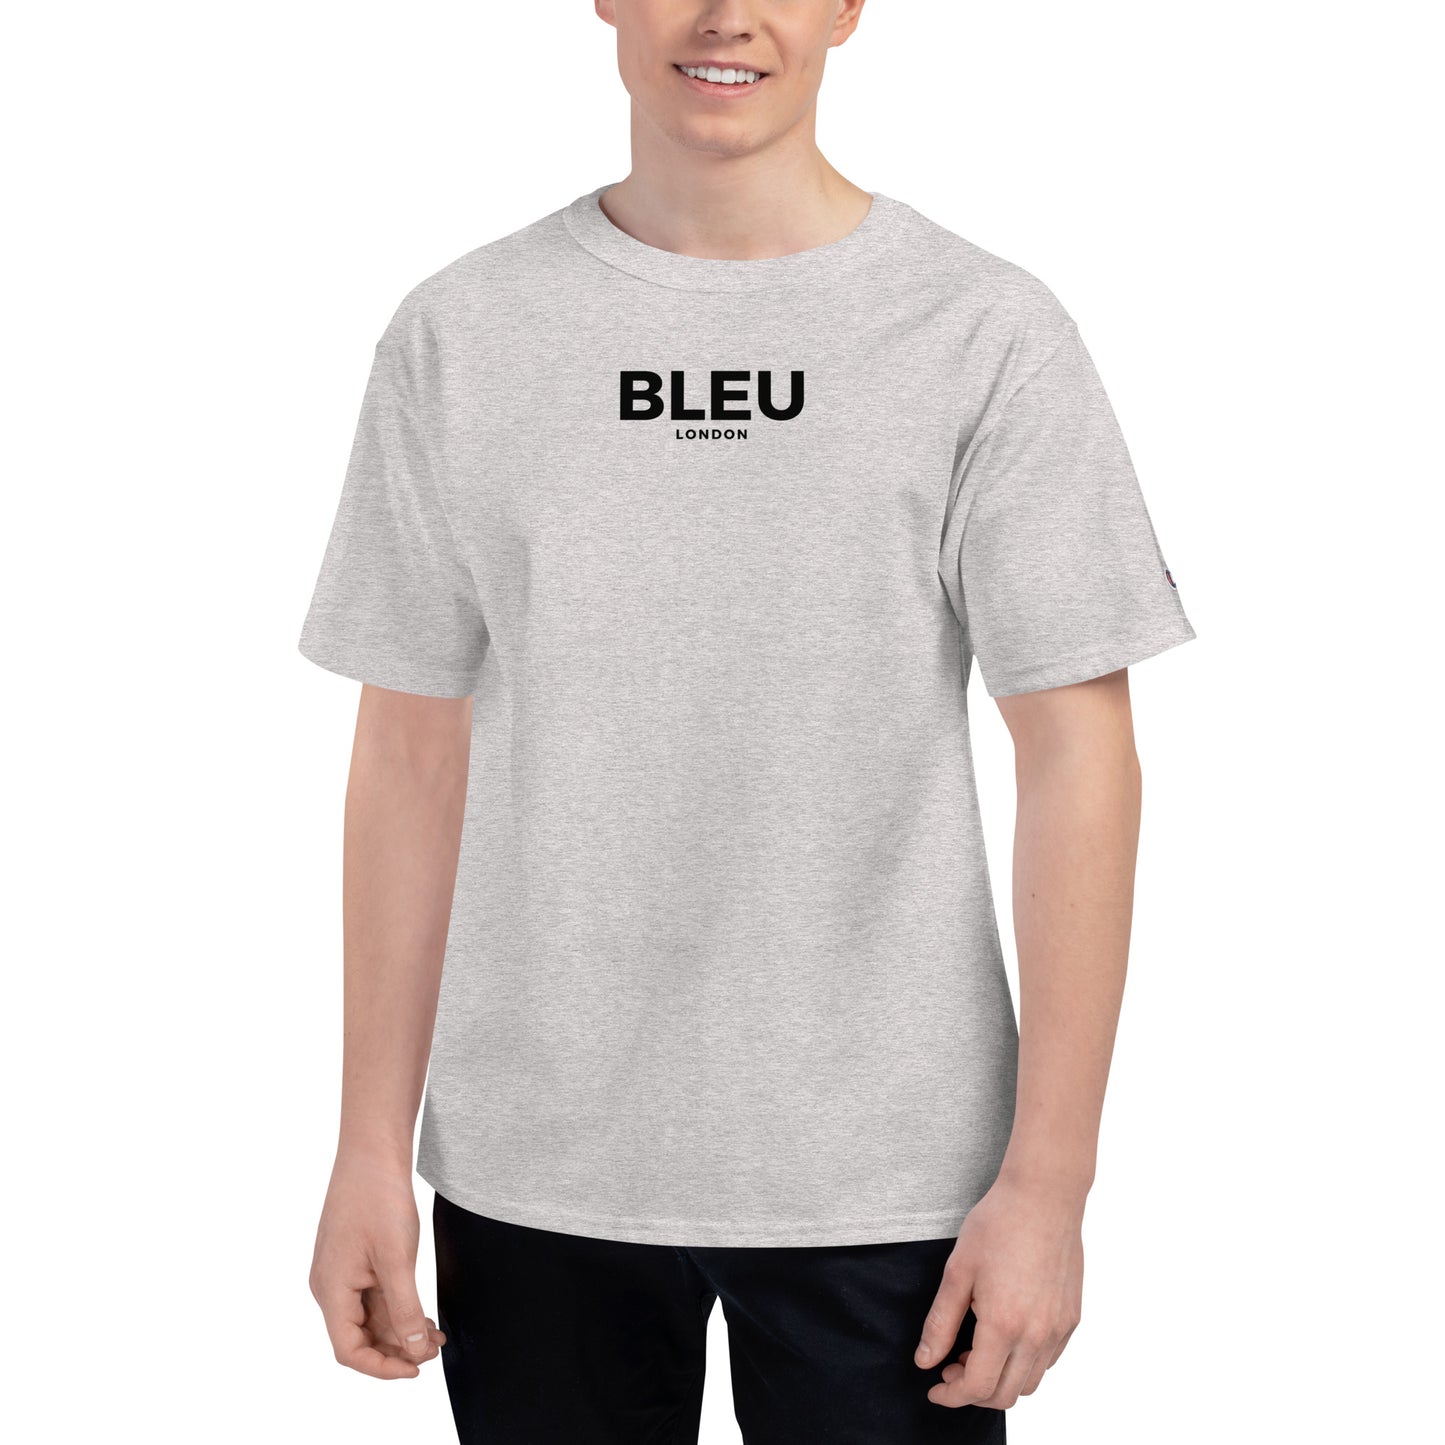 Bleu London x Champion Men's T-Shirt